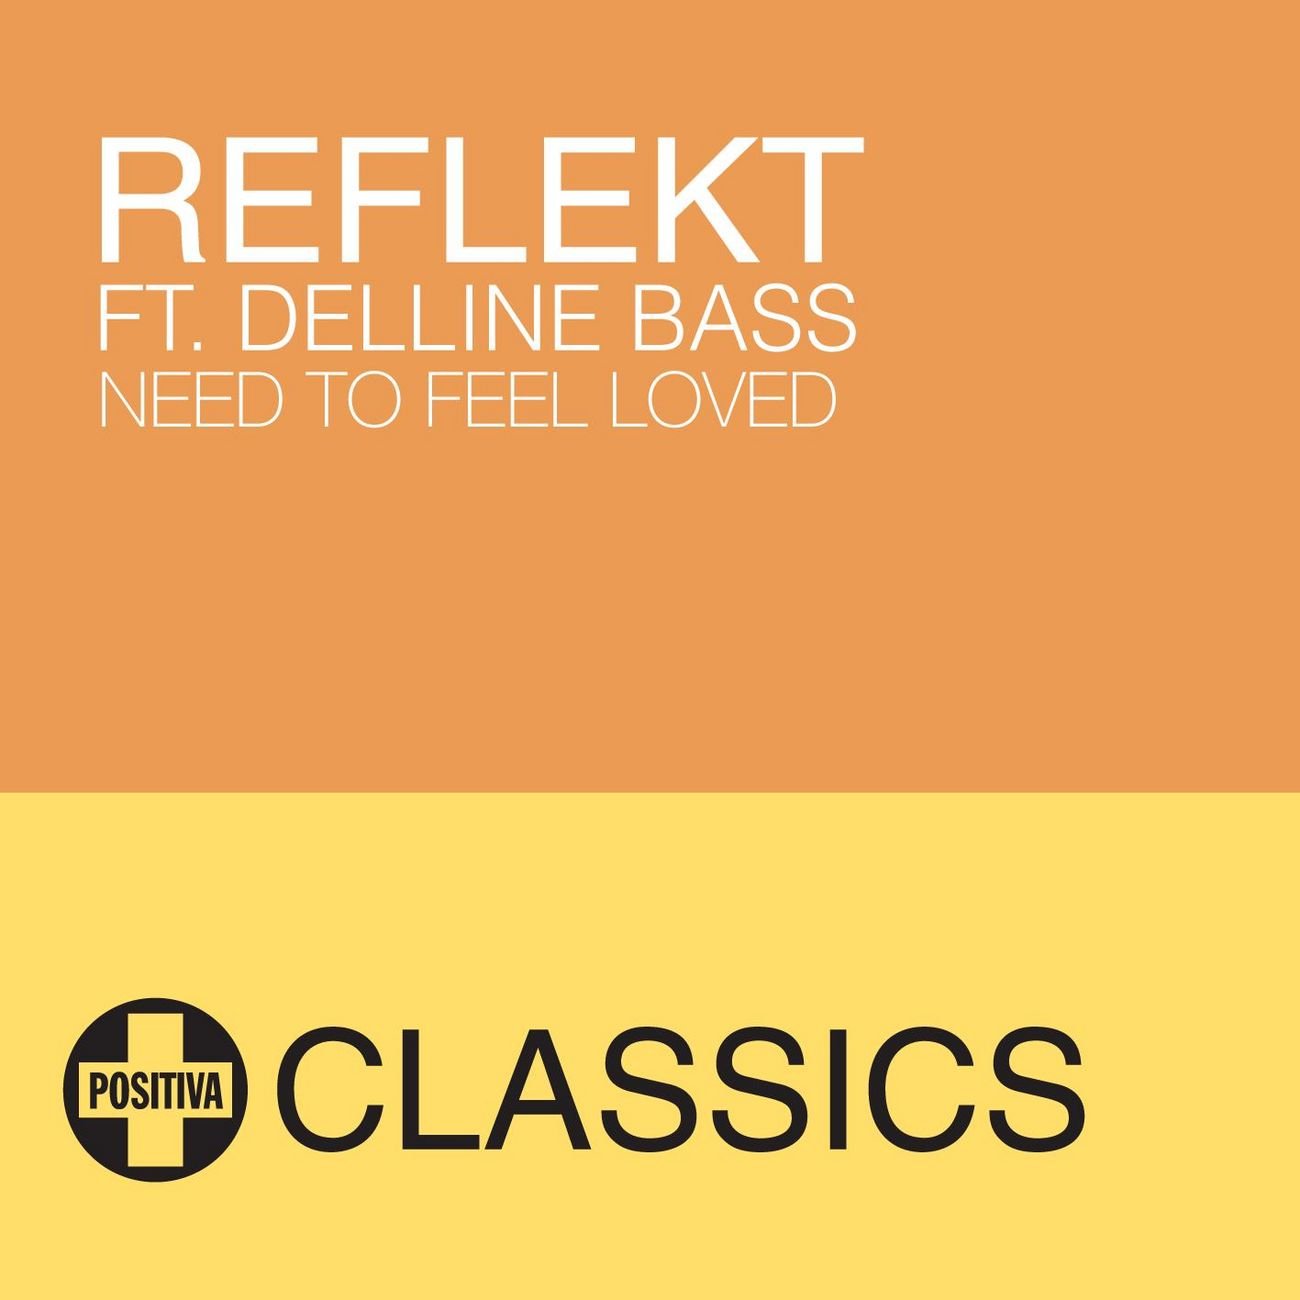 Need to feel loved reflekt delline bass